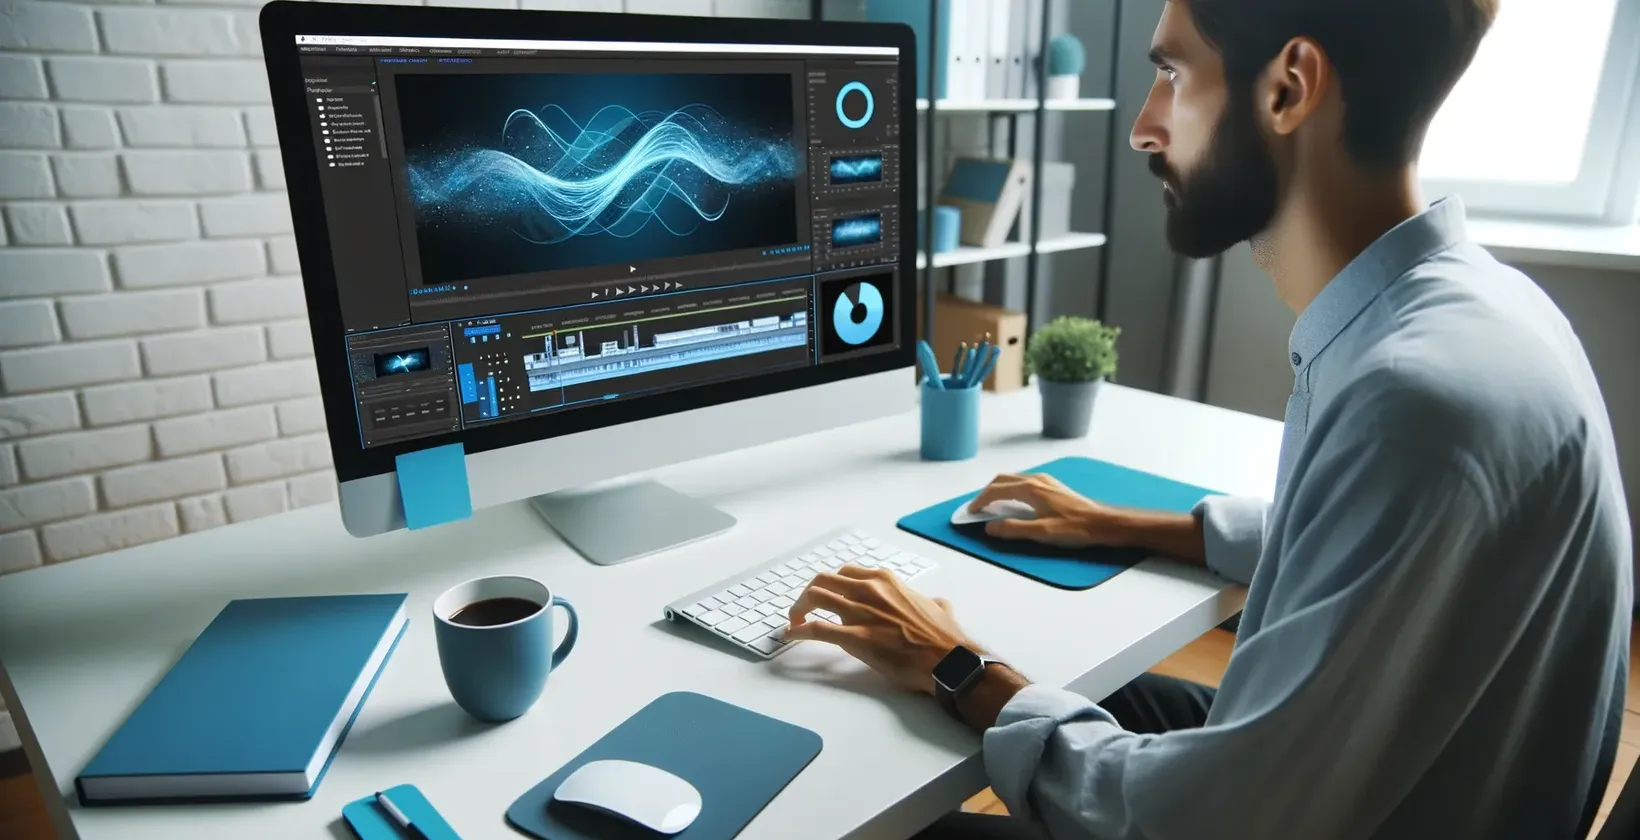 Mann tippt auf Computer mit blauem Bildschirm, mit iMovie Untertiteln